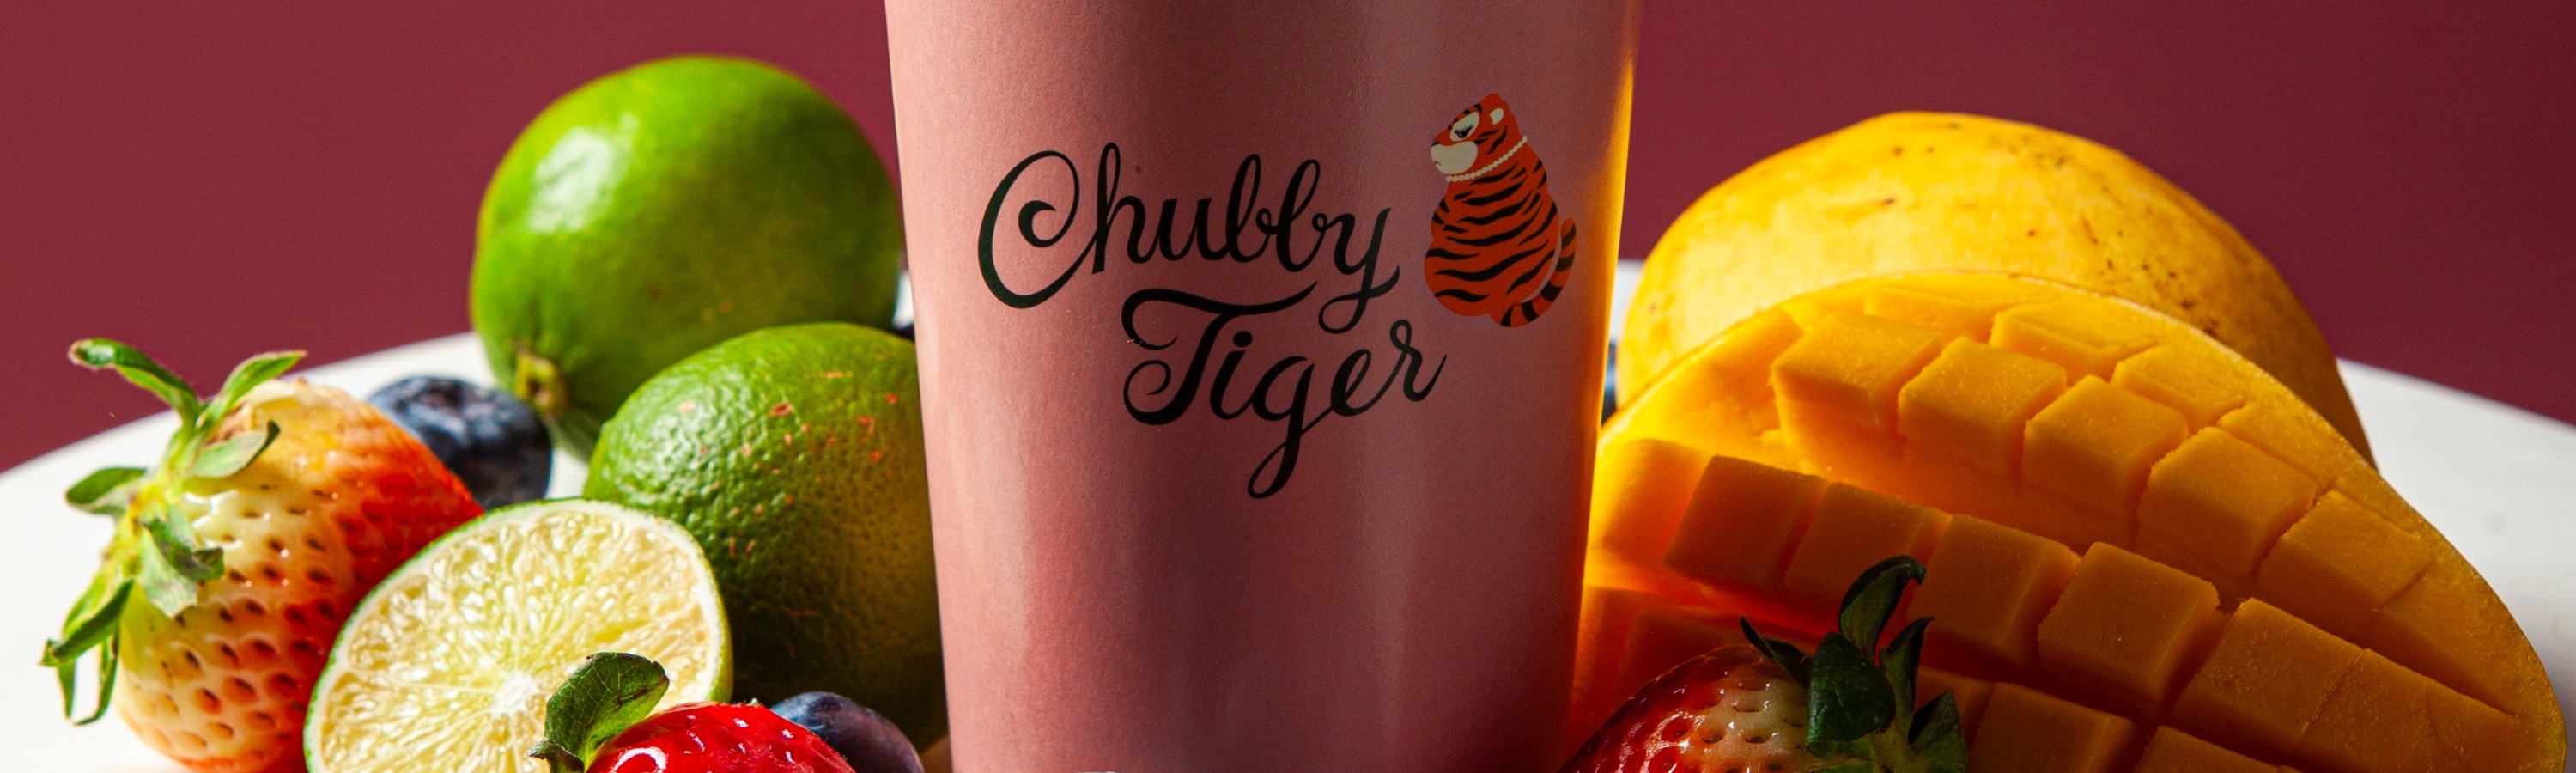 曼谷尚泰世界購物中心Chubby Tiger英式奶茶體驗